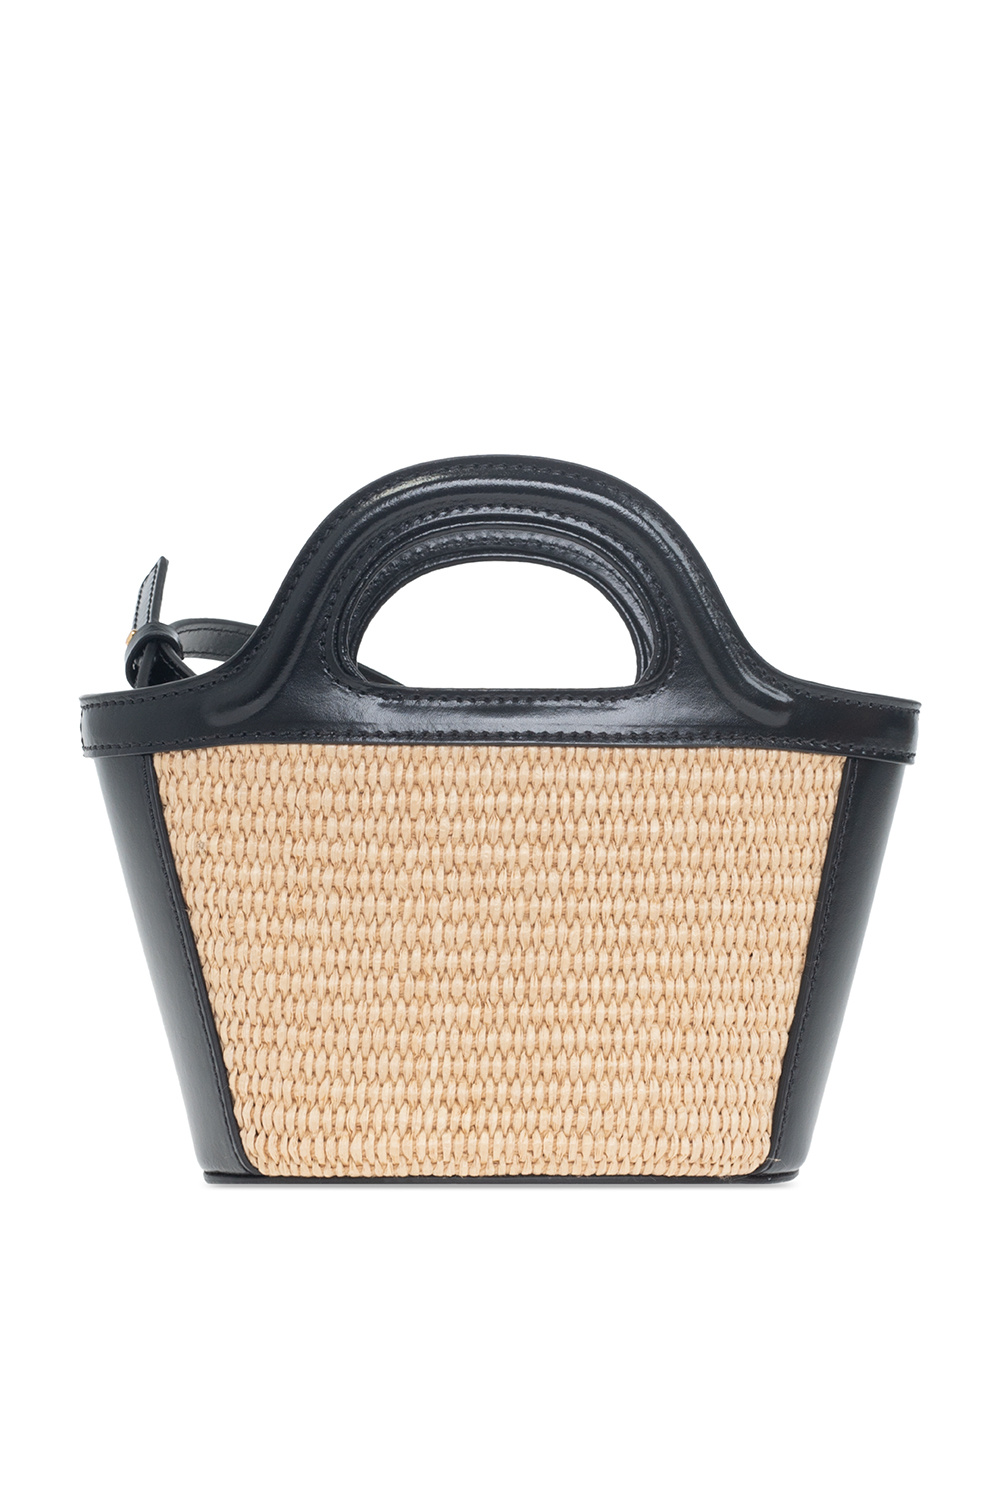 MARNI】2WAY Bag Basket Bag TROPICALIA MICRO BMMP0067Q0 P3860